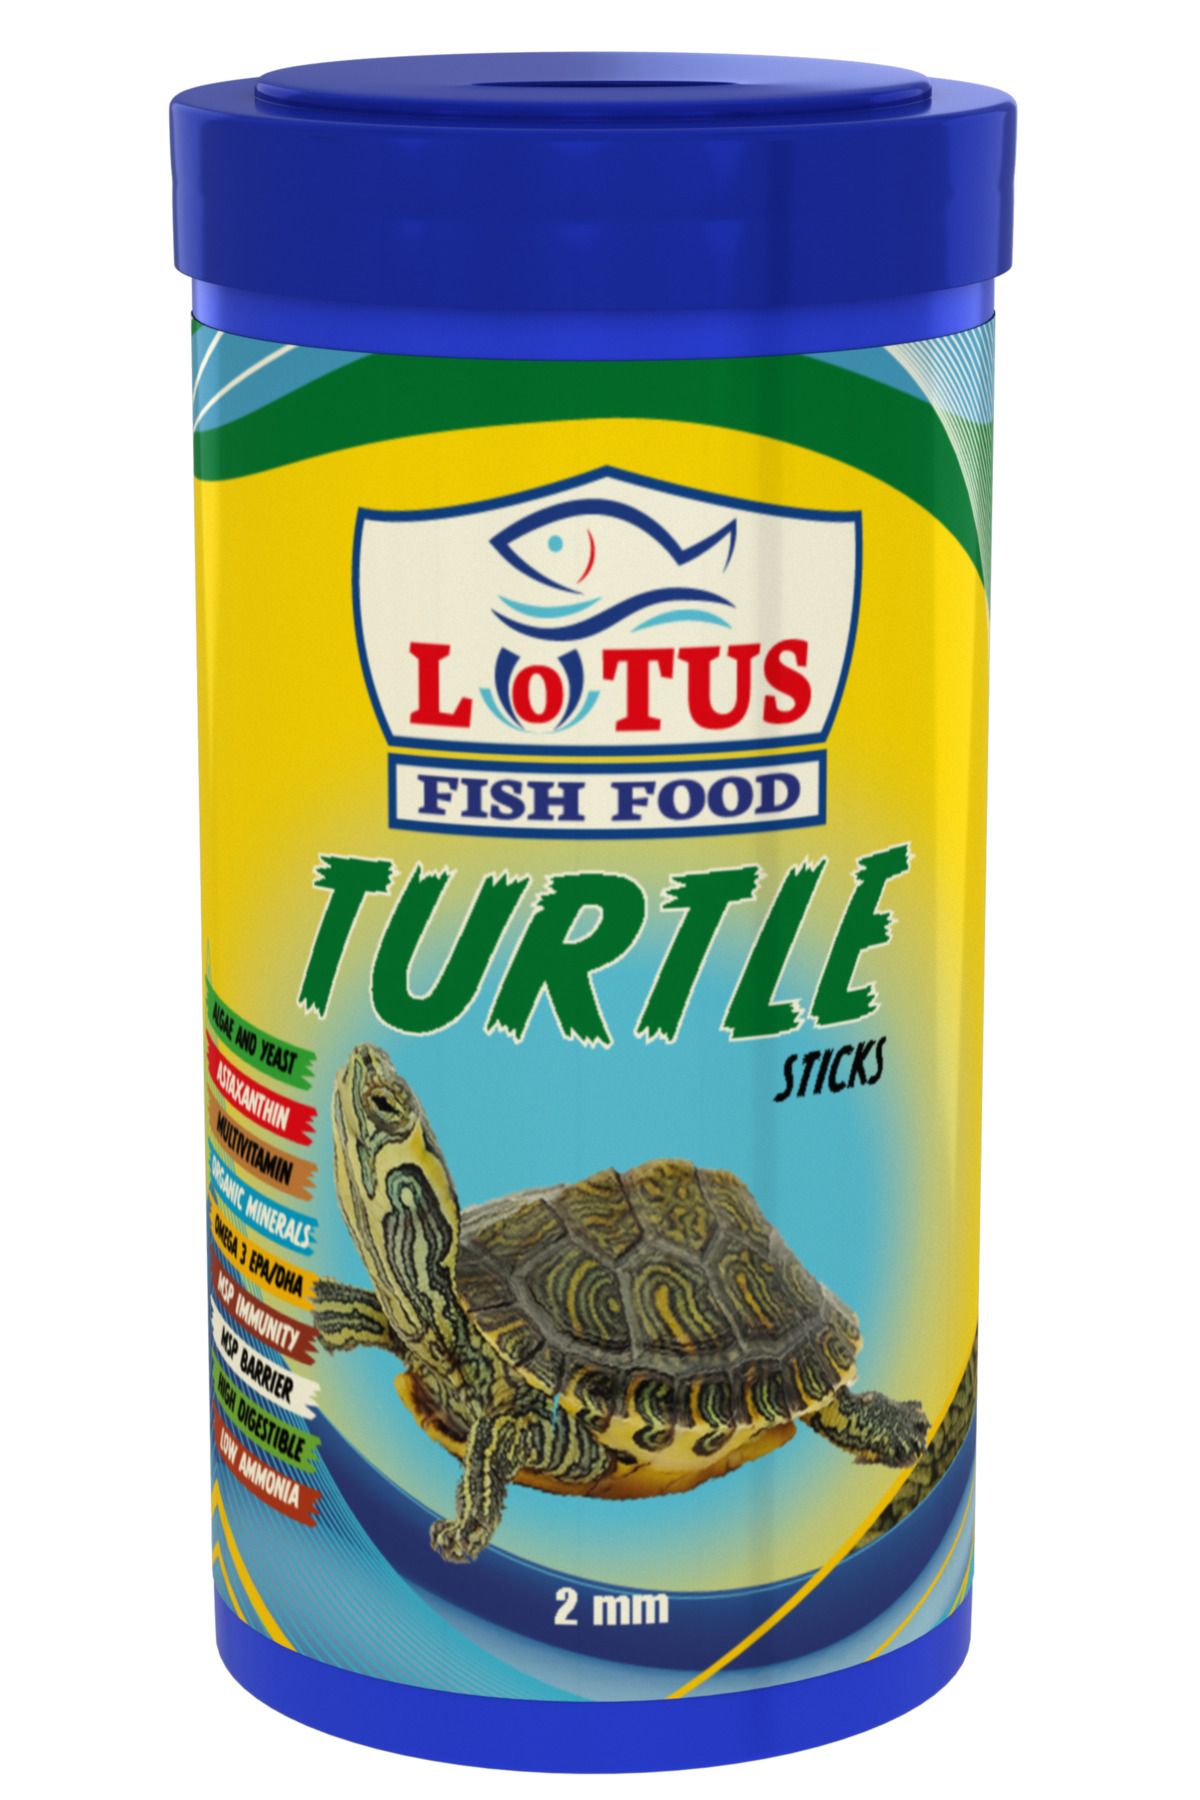 Lotus Lotus Turtle Sticks 250ml, Ahm Turtle Mix 250ml, Turtle 100ml Surungen Ve Kaplumbaga Yemi